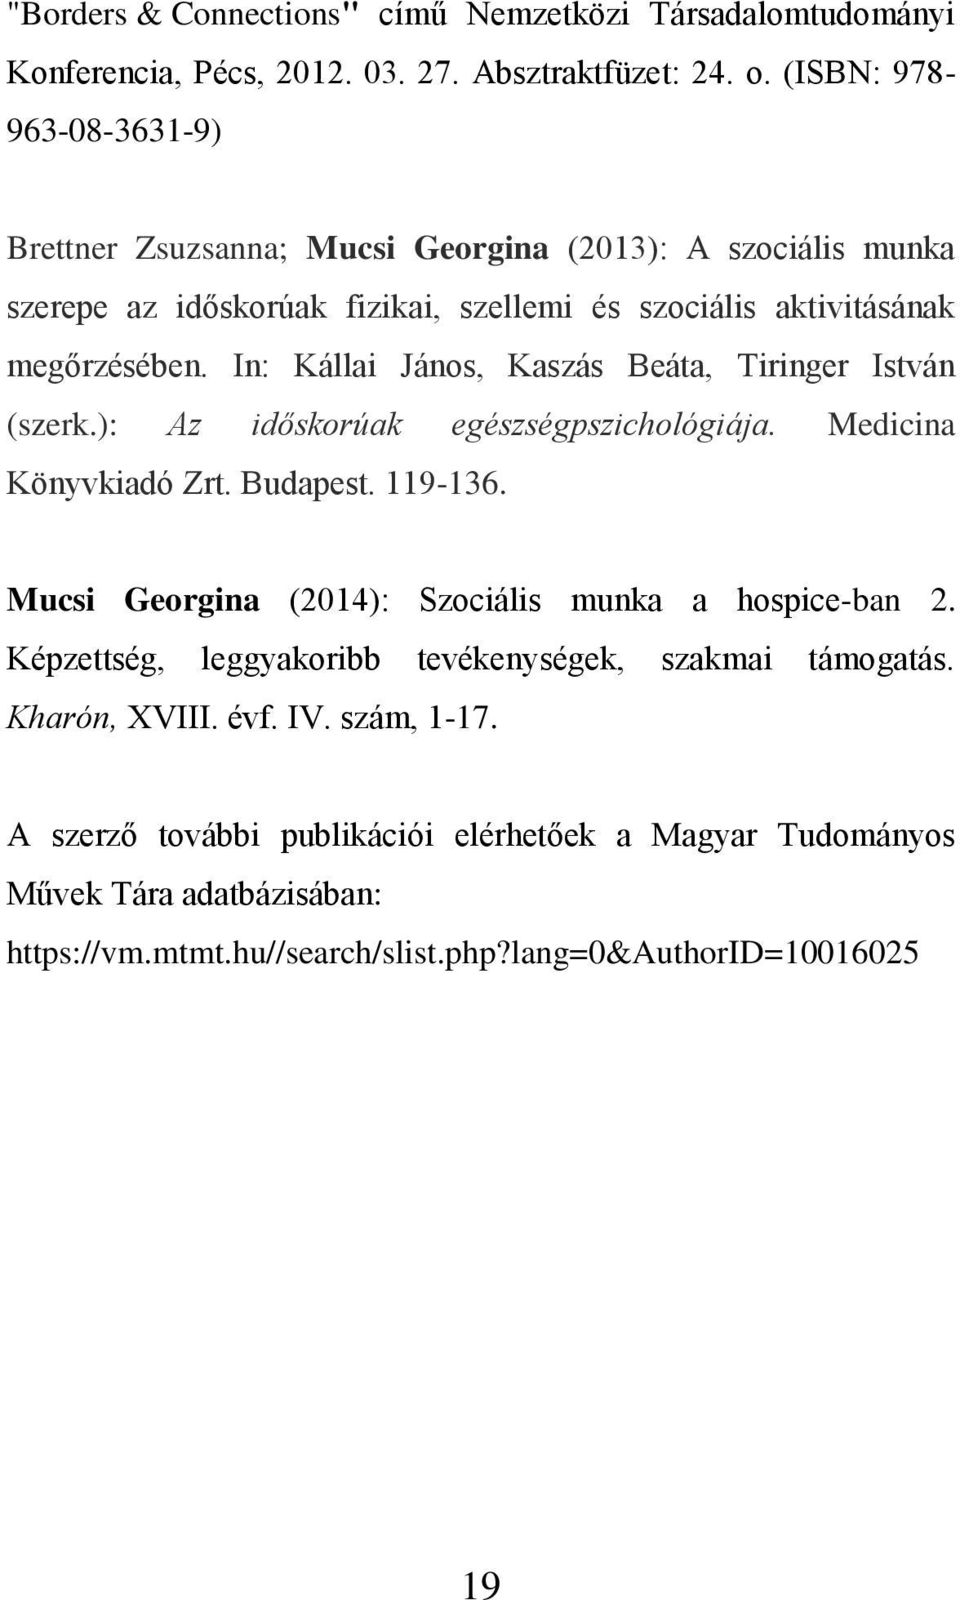 In: Kállai János, Kaszás Beáta, Tiringer István (szerk.): Az időskorúak egészségpszichológiája. Medicina Könyvkiadó Zrt. Budapest. 119-136.